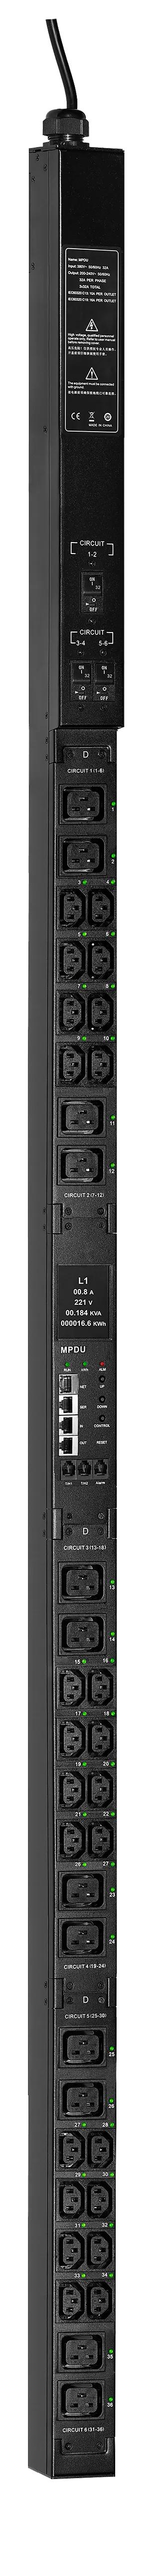 ITK CONTROL PDU с общим мониторингом и управлением PV1513 3Ф 32А 24С13 12С19 кабель 3м IEC60309